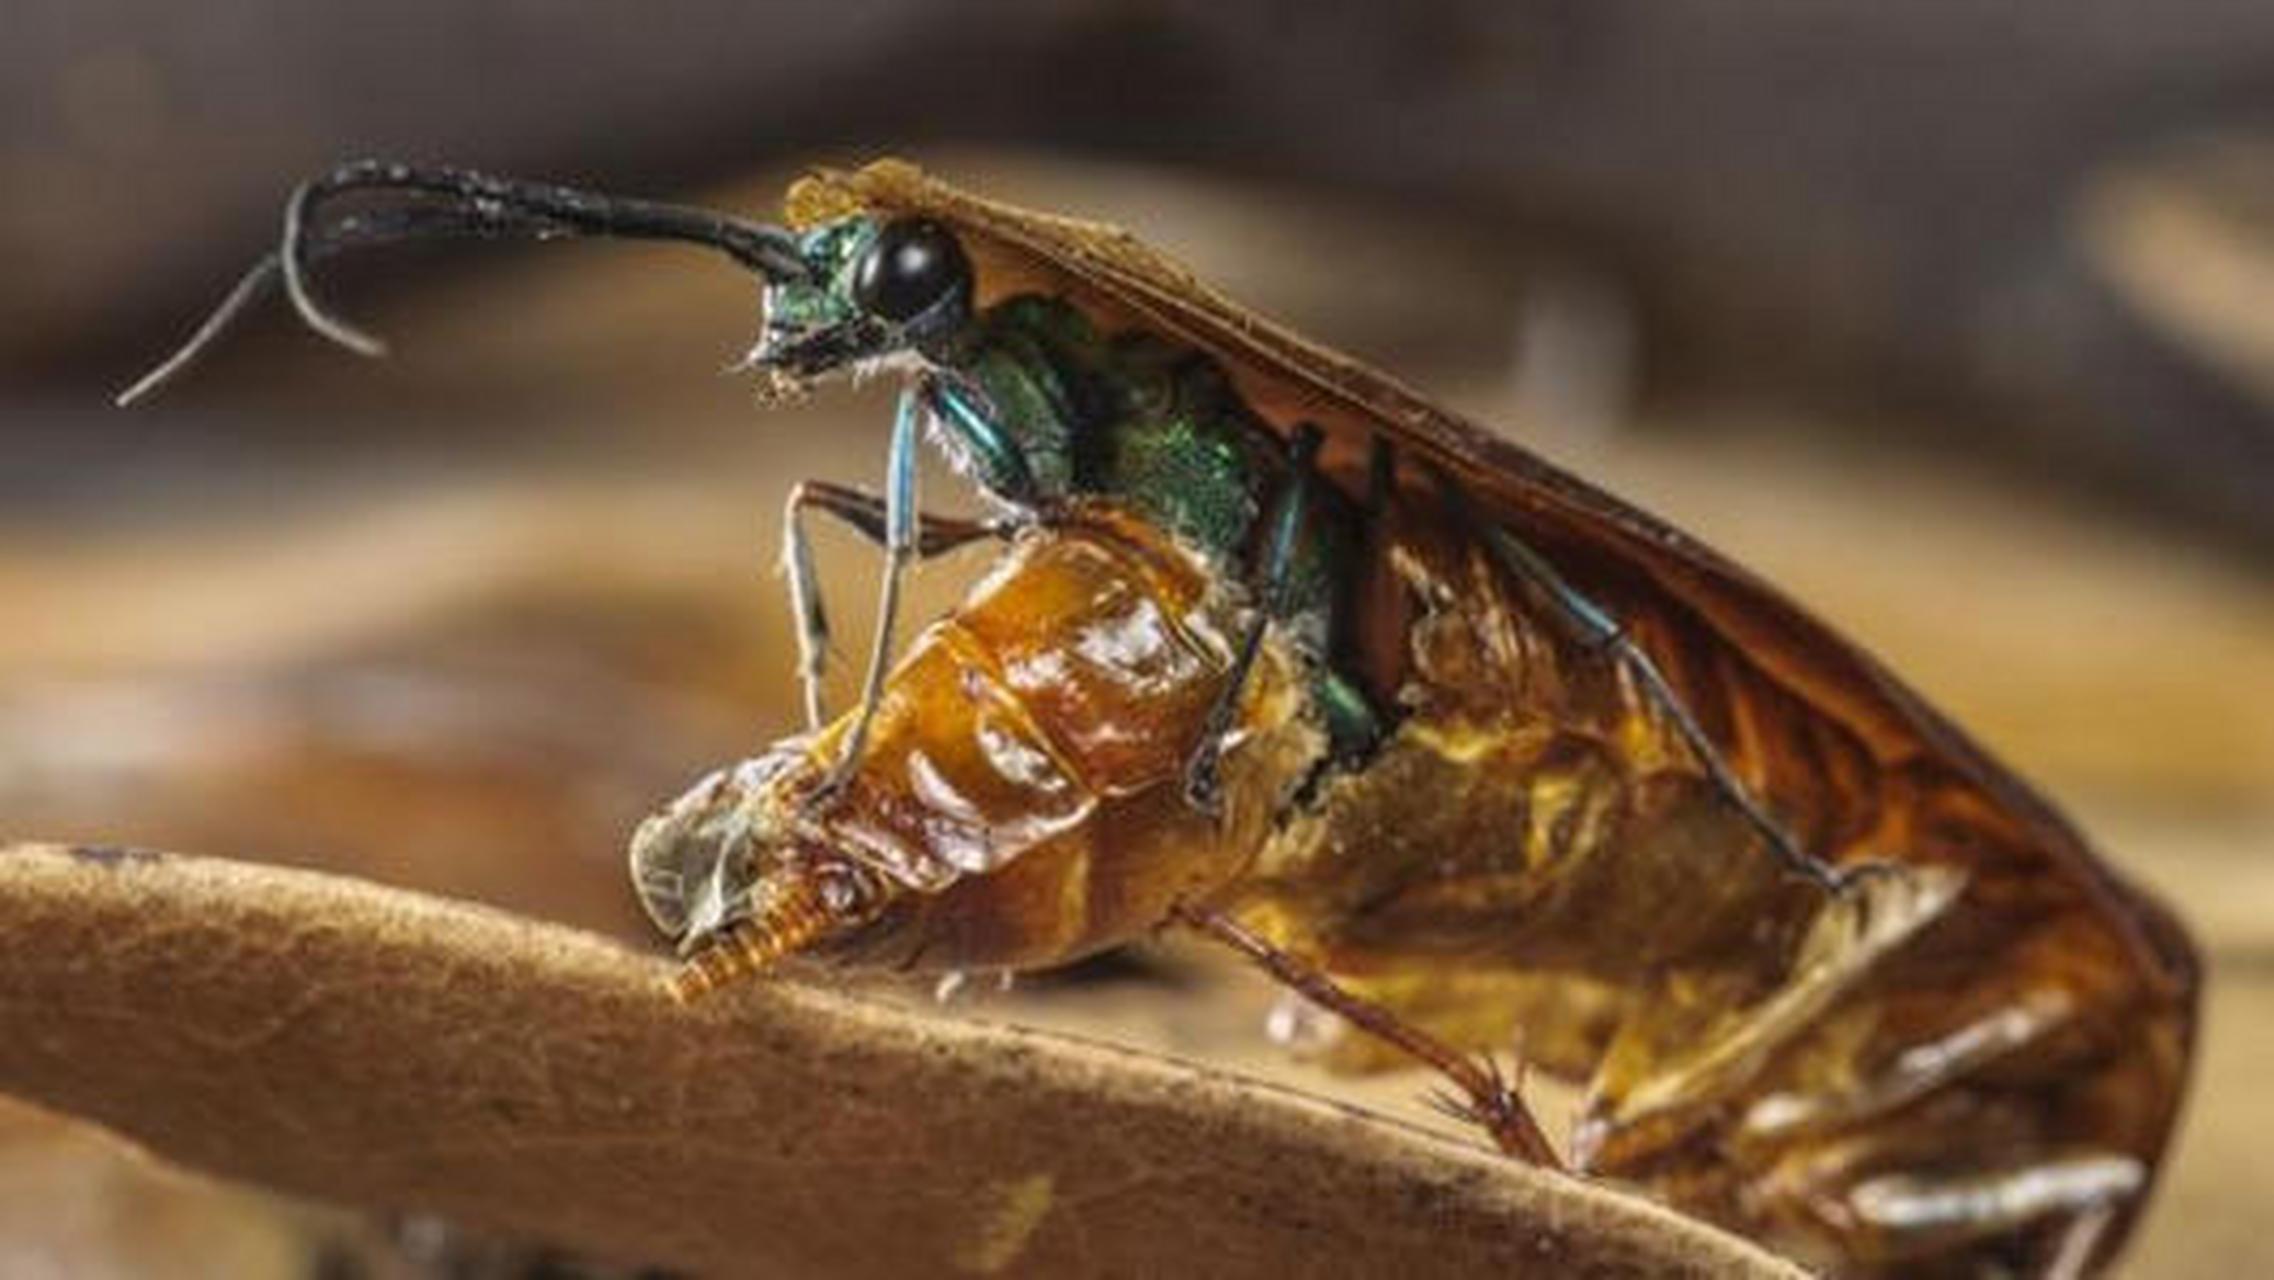 扁头泥蜂是动物界的"摄魂怪",它能通过注入毒素的方式控制蟑螂的行为